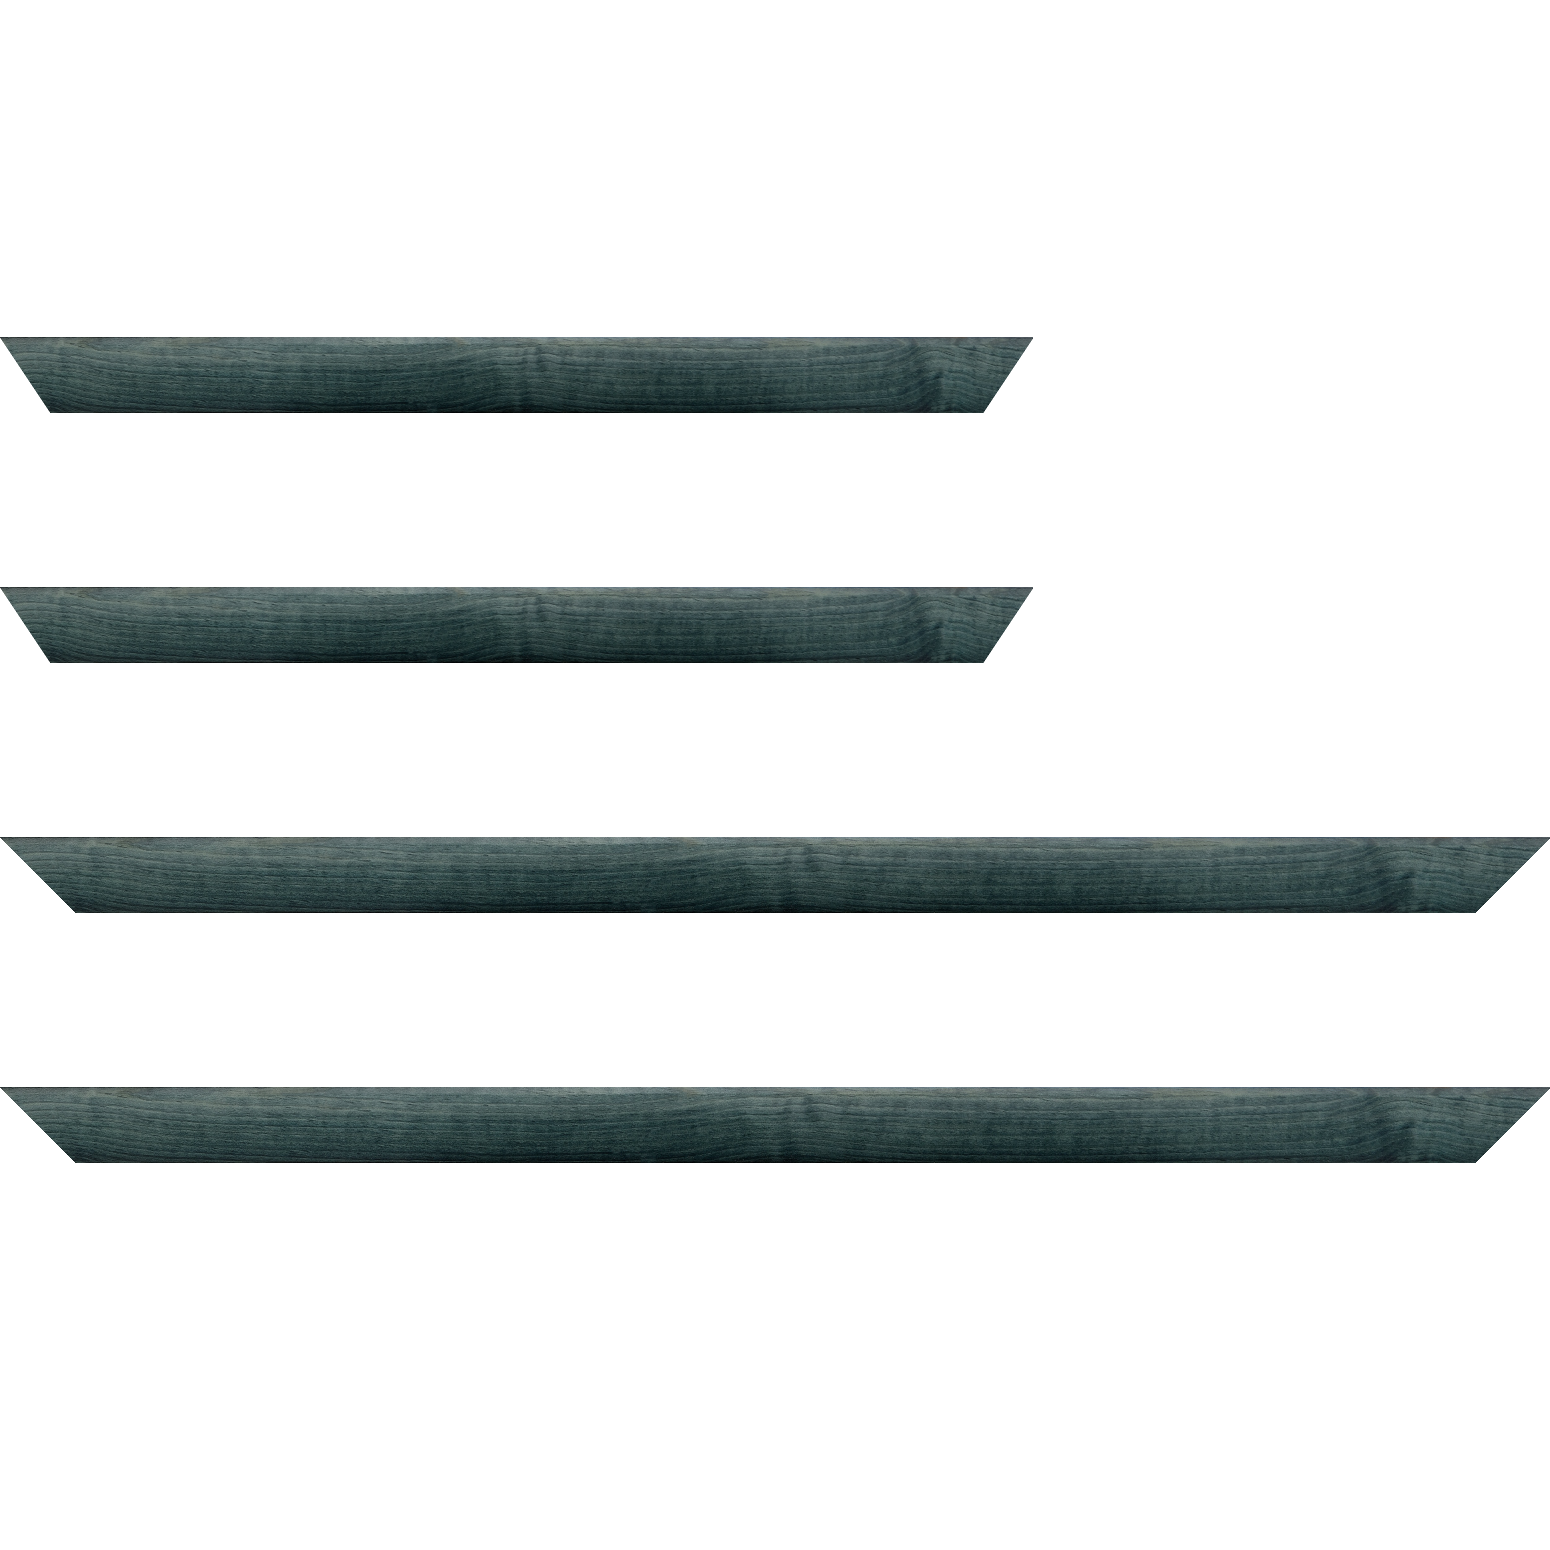 Baguette bois profil arrondi en pente plongeant largeur 2.4cm couleur bleu turquoise foncé finition vernis brillant,veine du bois  apparent (pin) , - 30x90